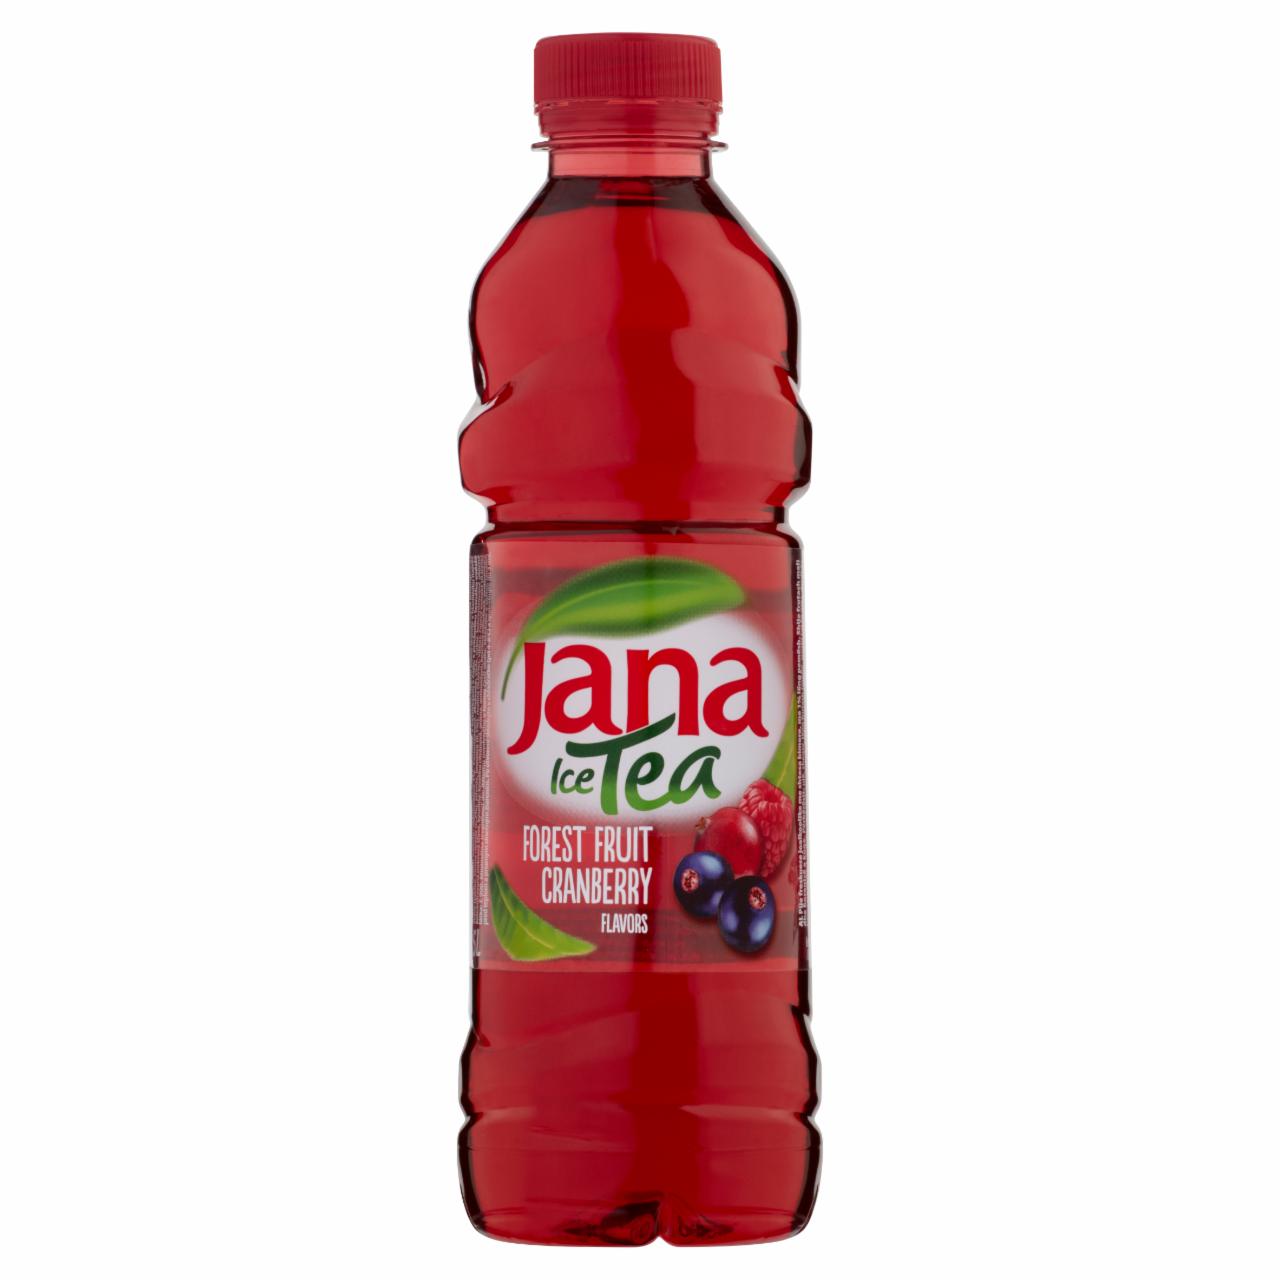 Képek - Jana Ice Tea szénsavmentes erdei gyümölcs-áfonya ízű és vegyes gyümölcs ízesítésű üdítőital 0,5 l